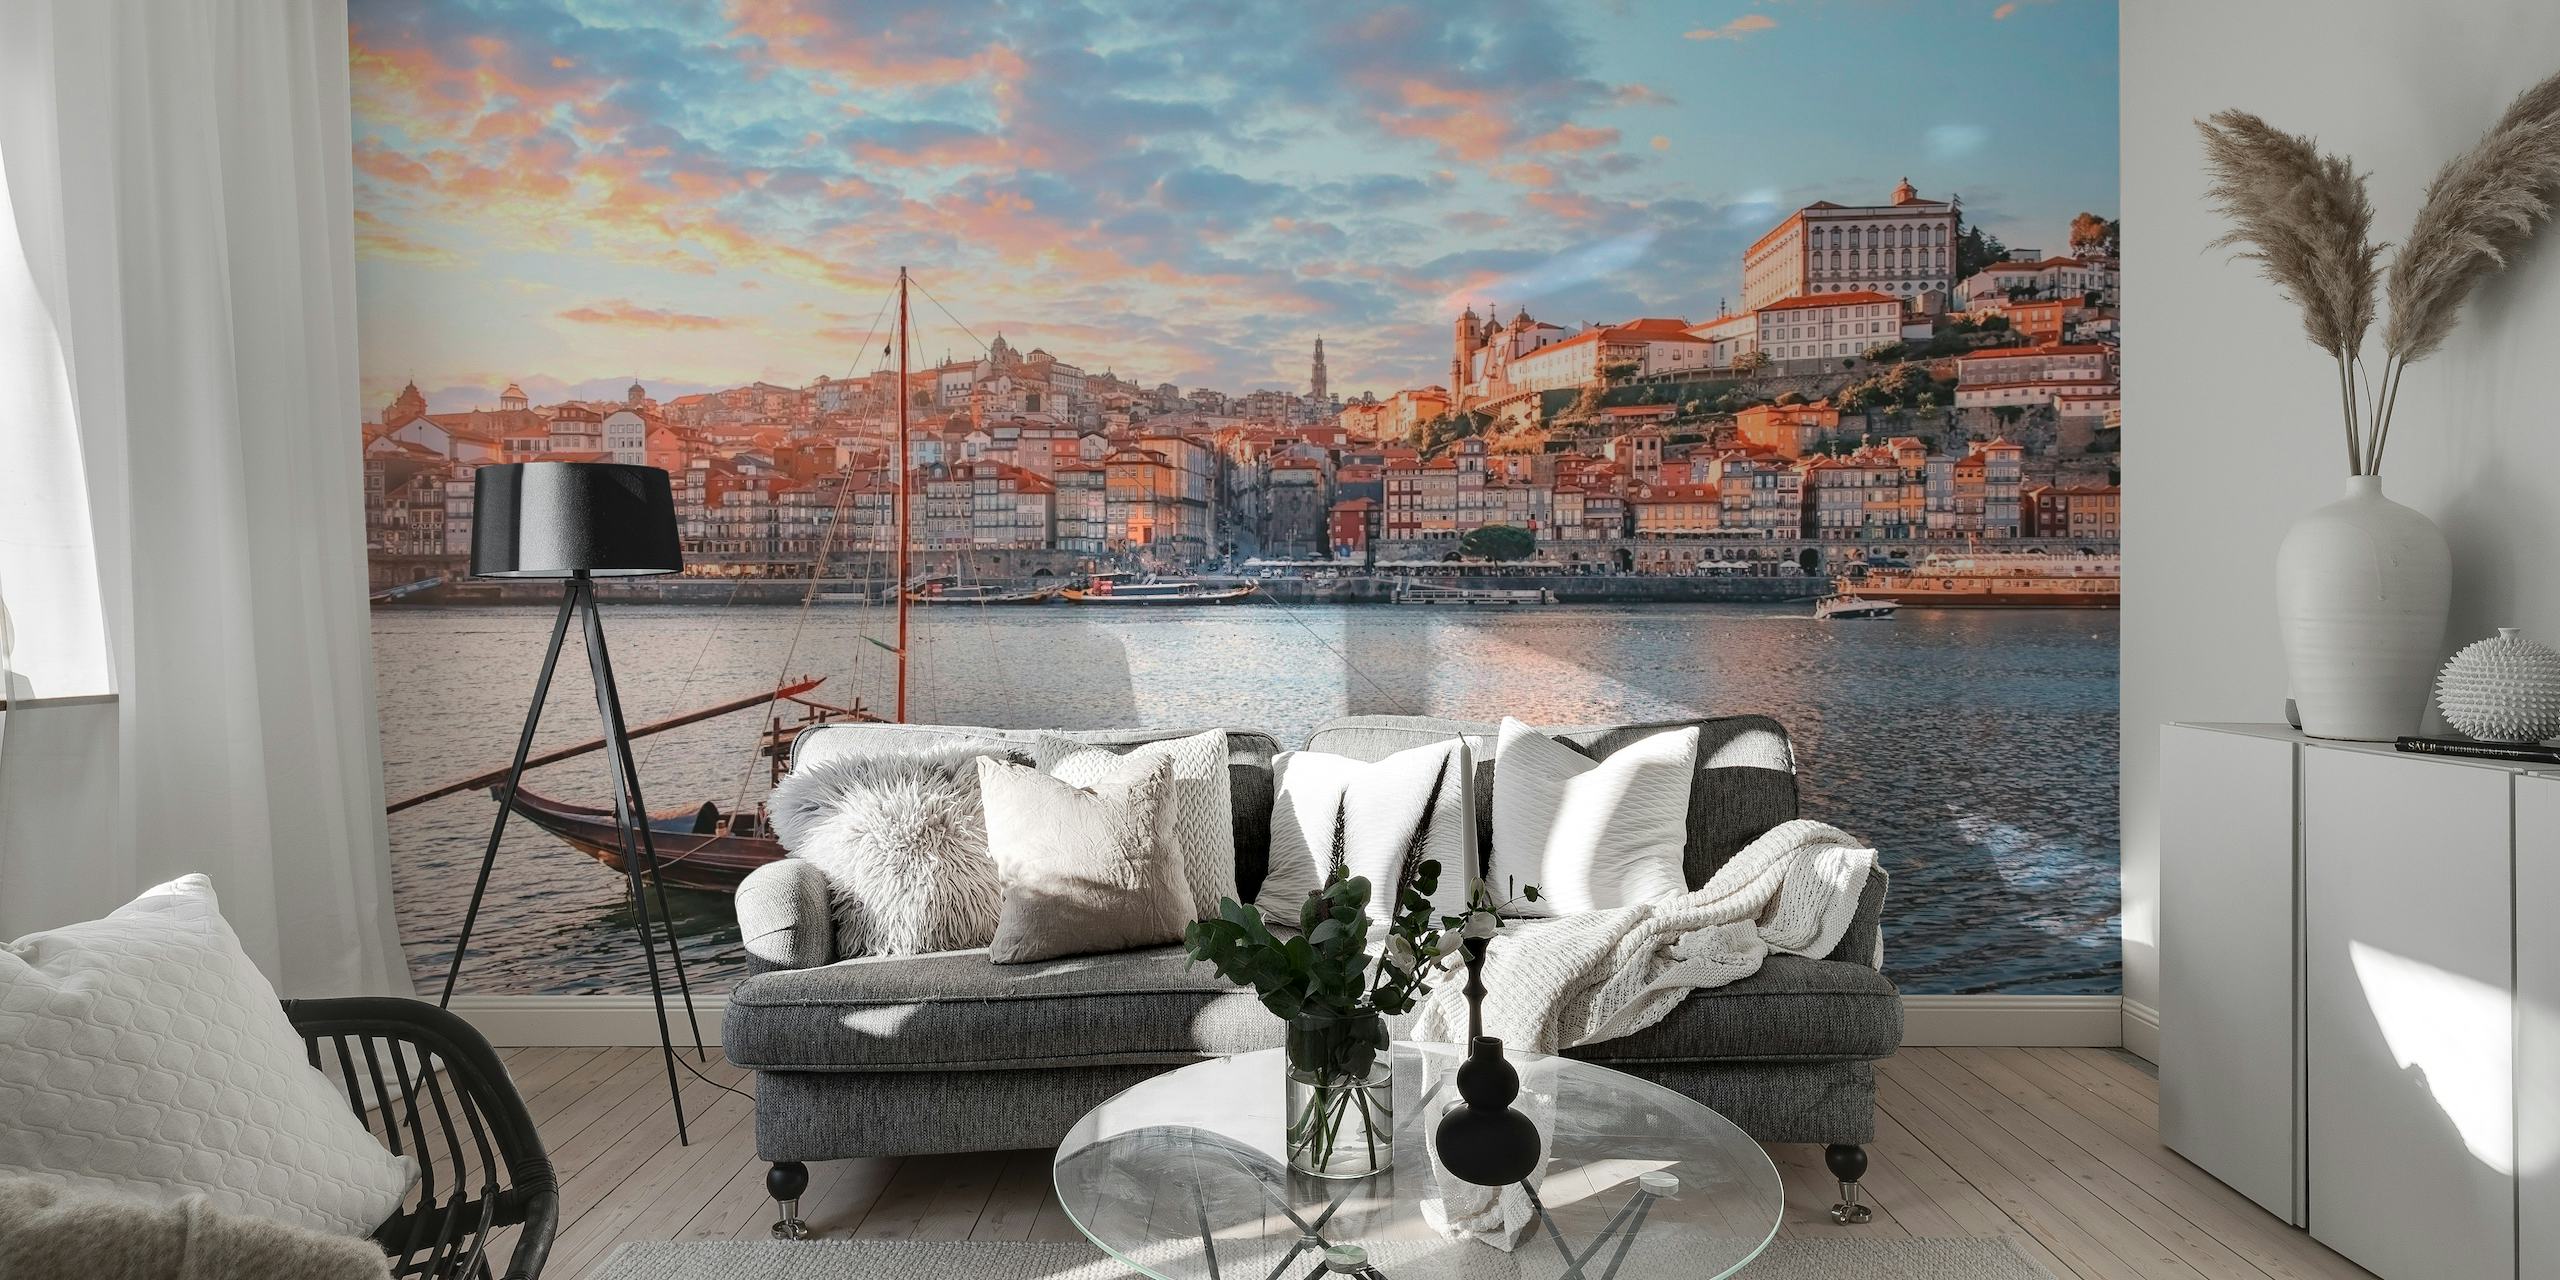 Fototapeta przedstawiająca pejzaż Porto o zachodzie słońca z dachami z terakoty i tradycyjną łodzią na rzece Douro